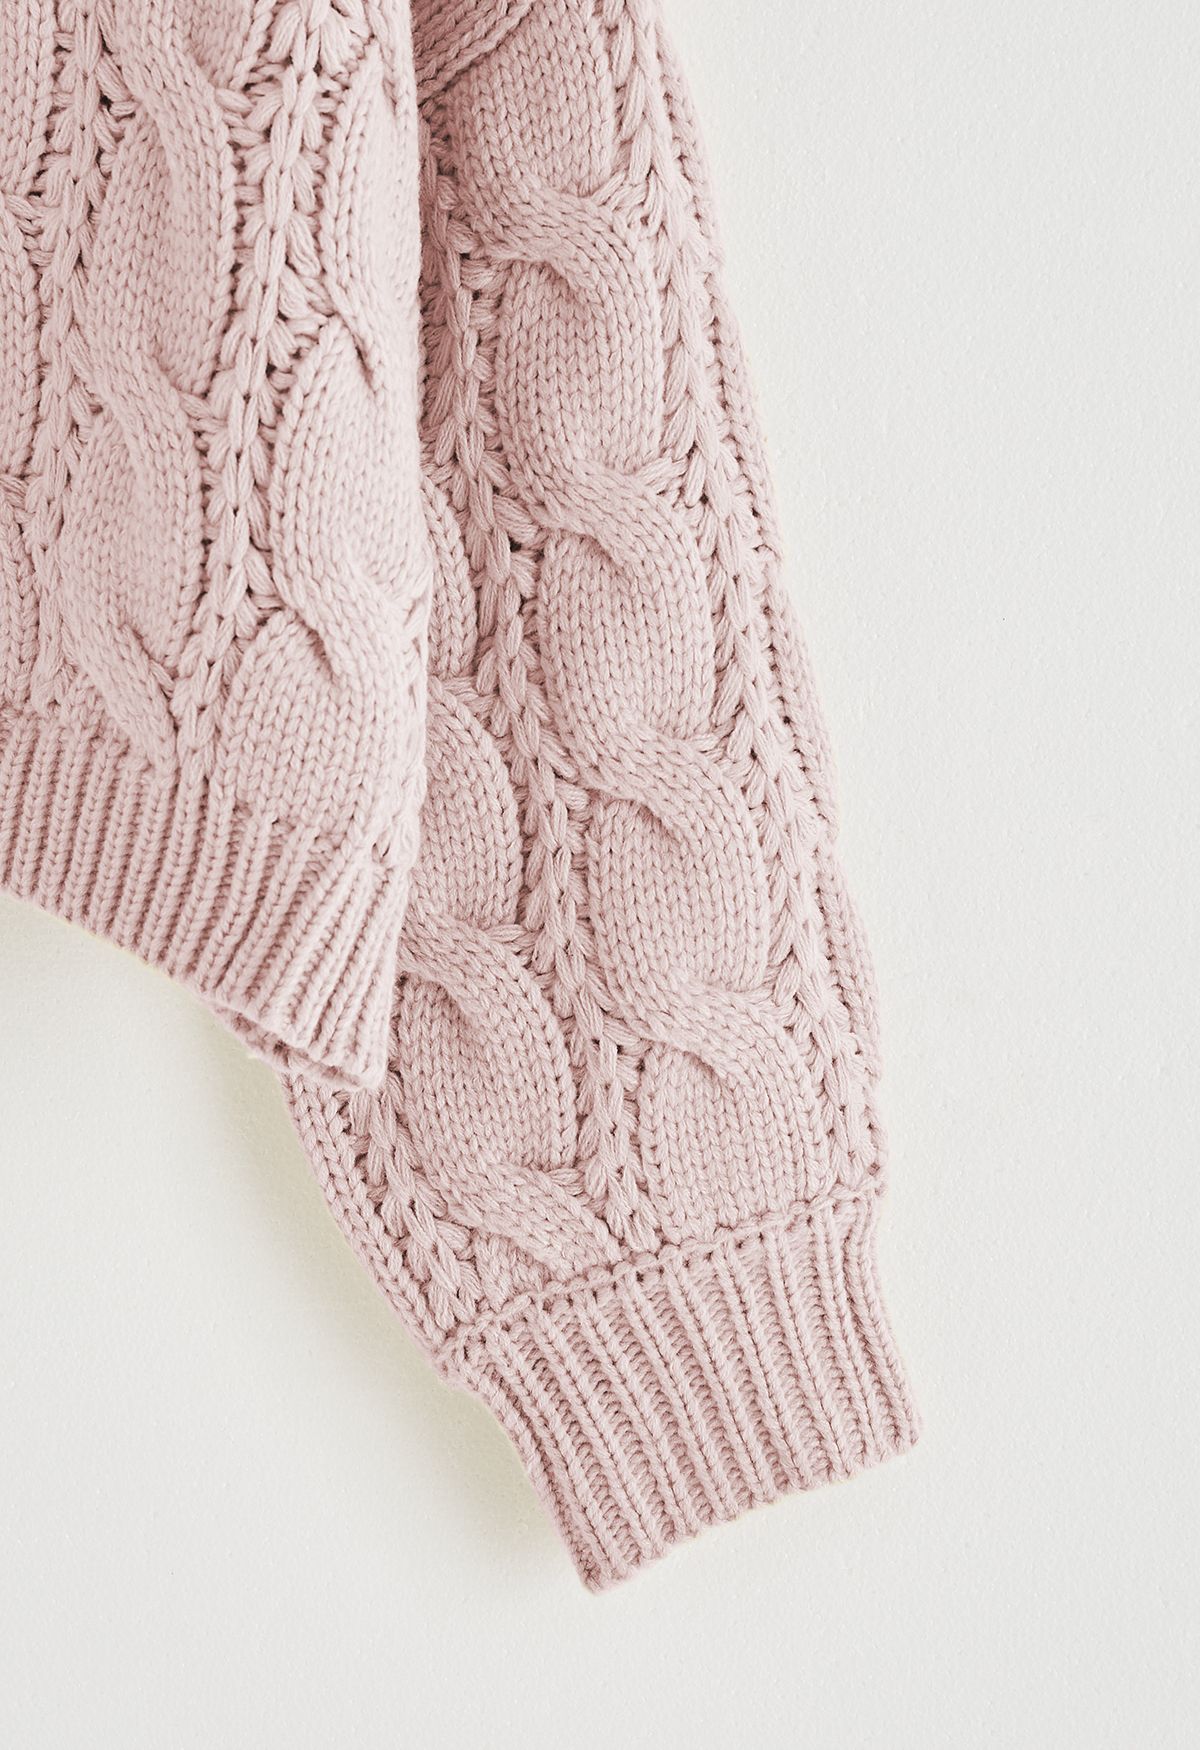 Turtleneck Braid Knit Crop Sweater in Pink